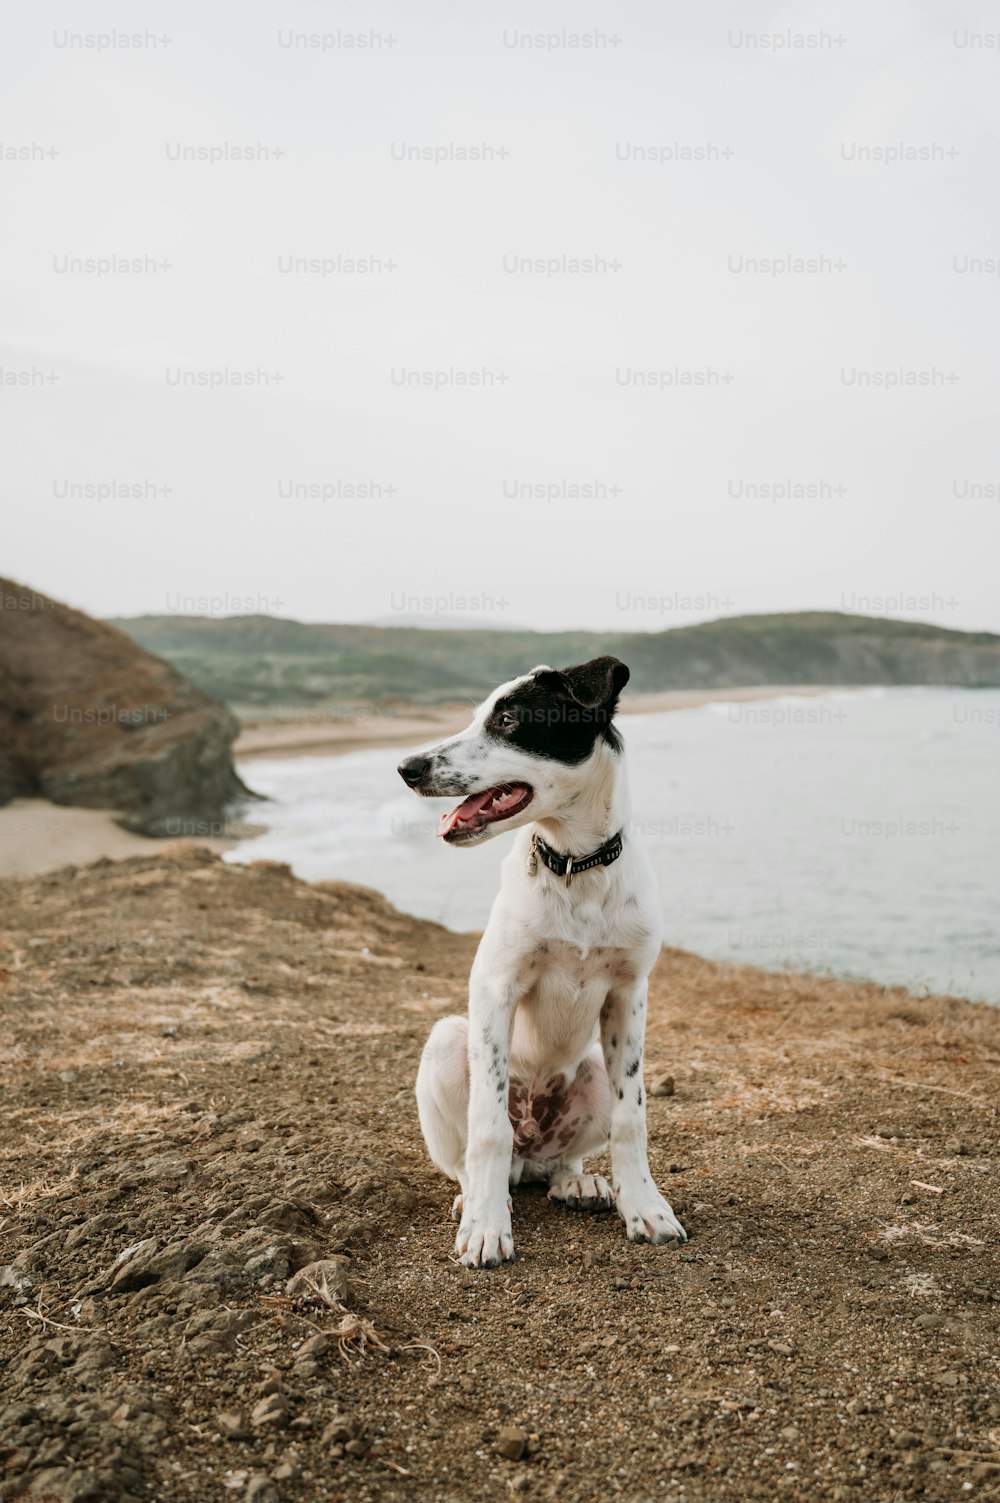 모래사장 위에 앉아 있는 흰색과 검은색 개